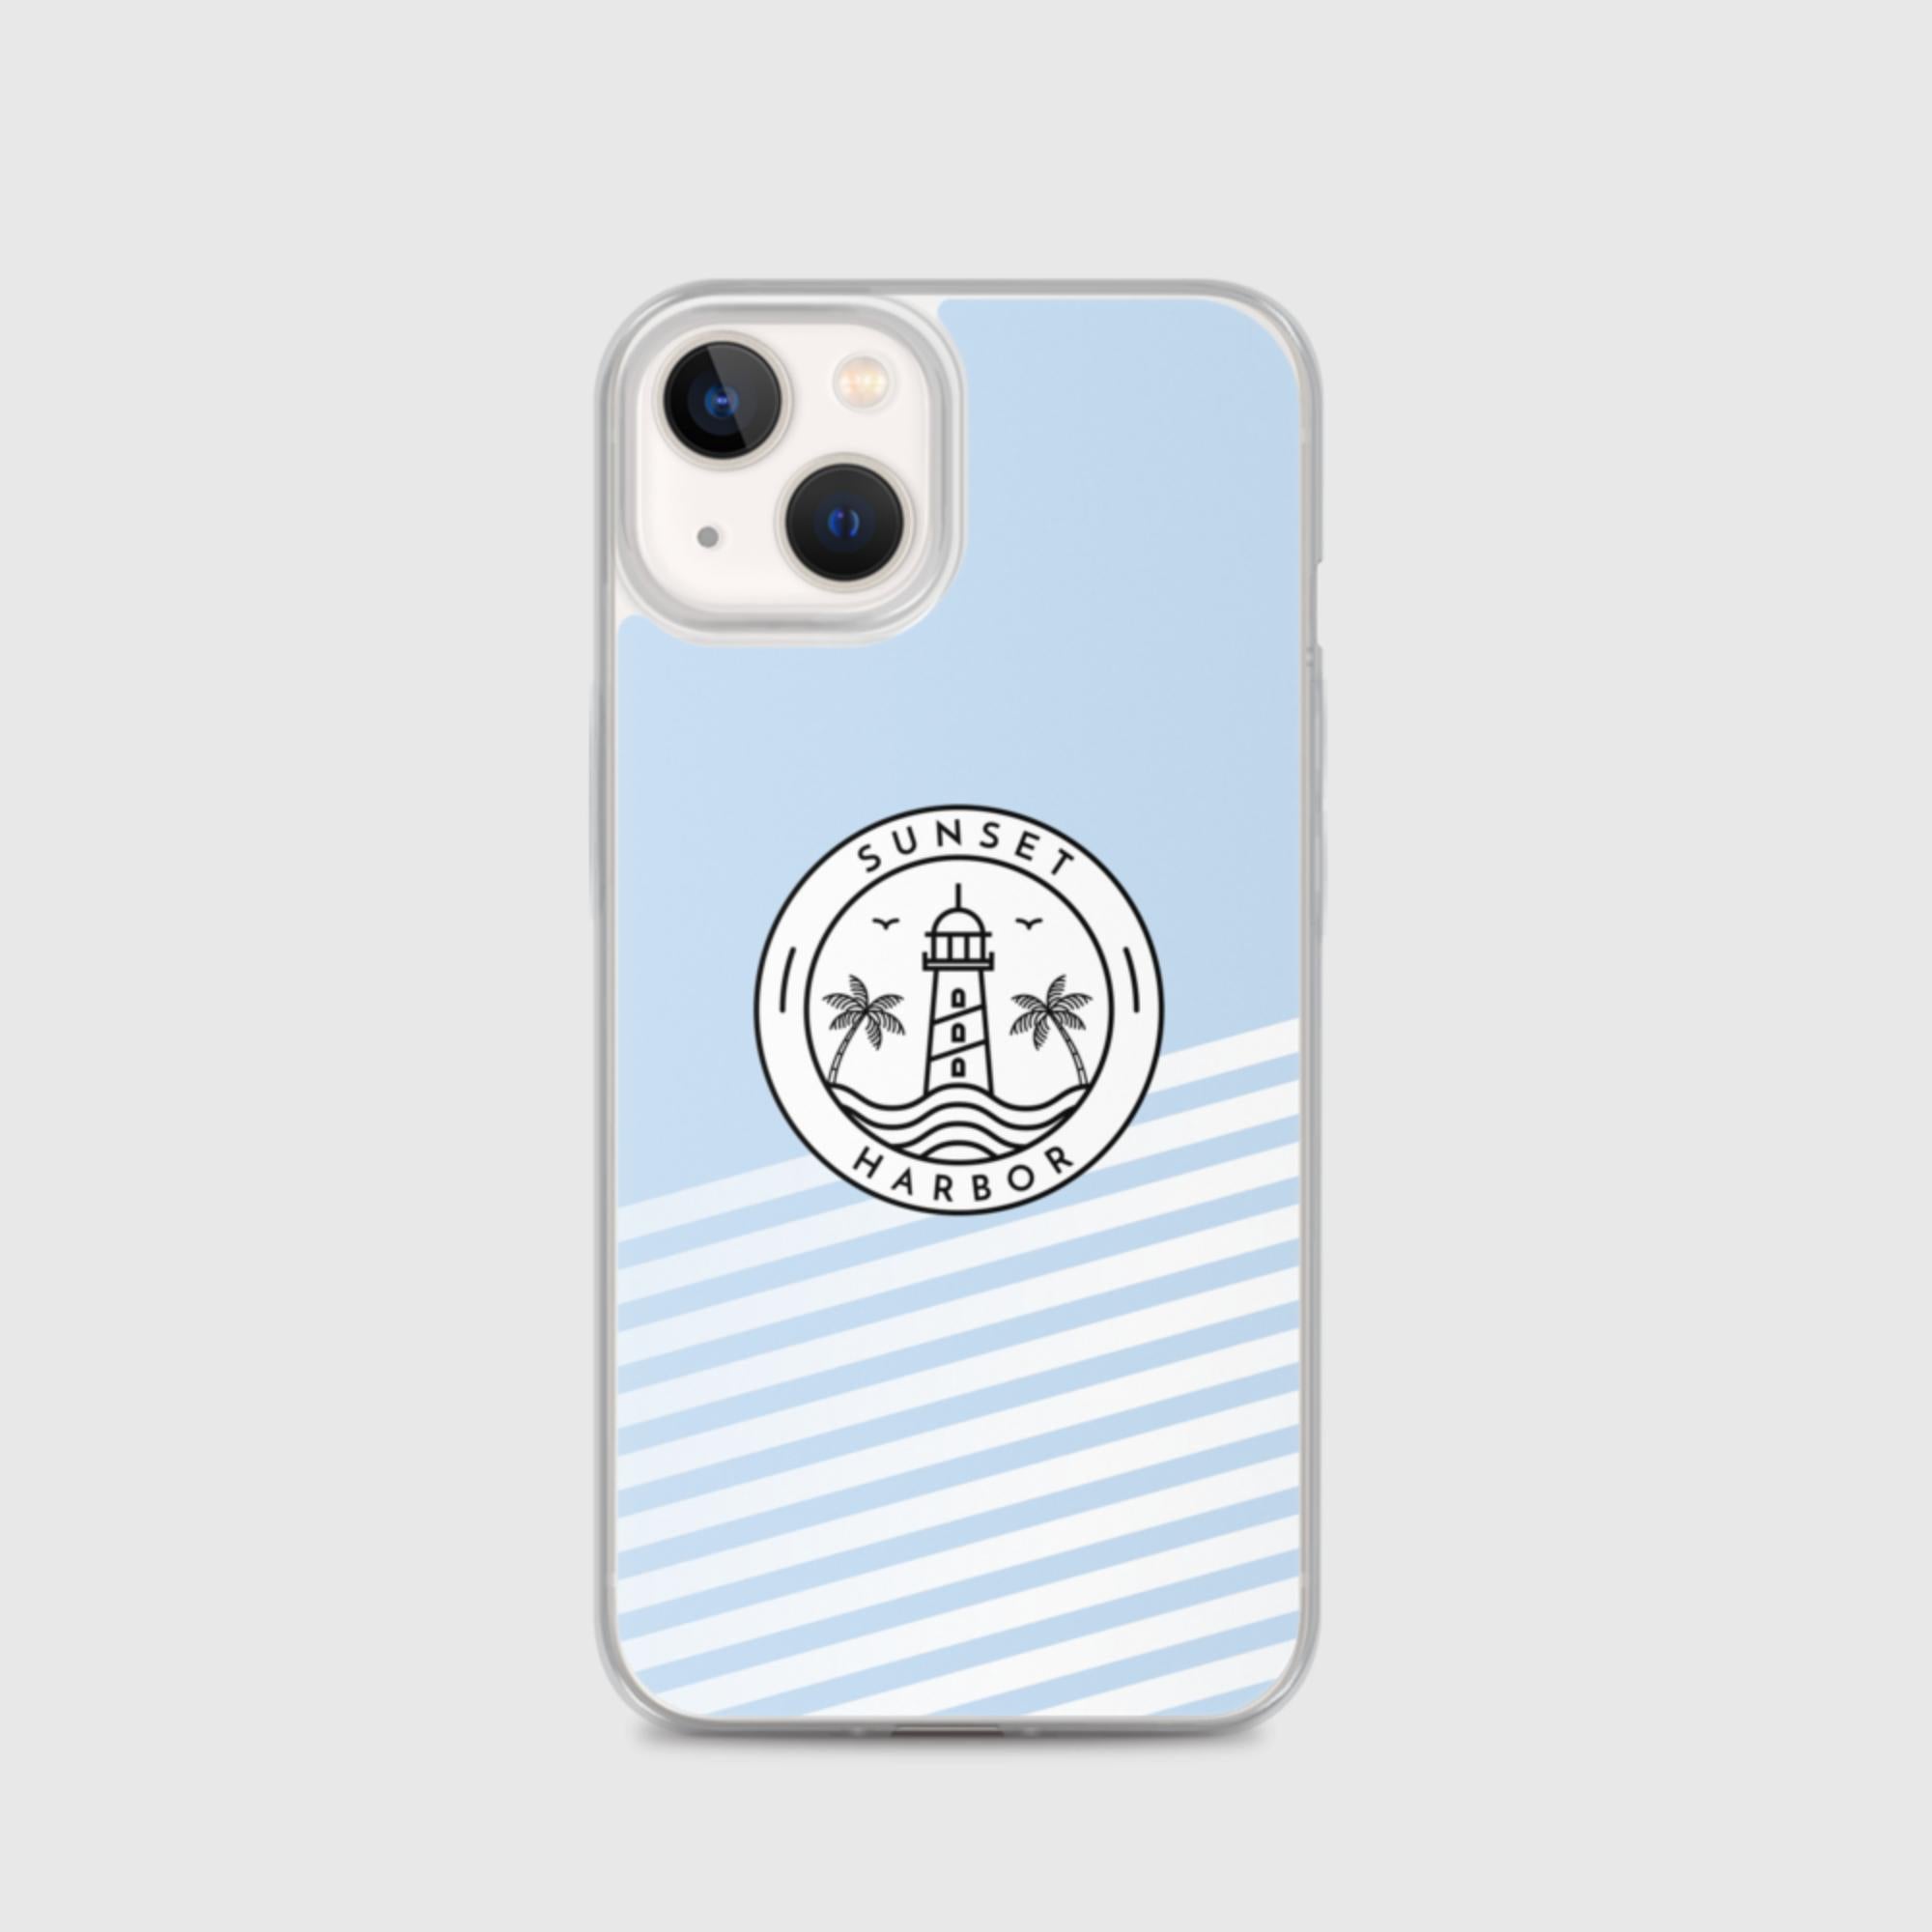 iPhone Case - Logo - Sunset Harbor Clothing